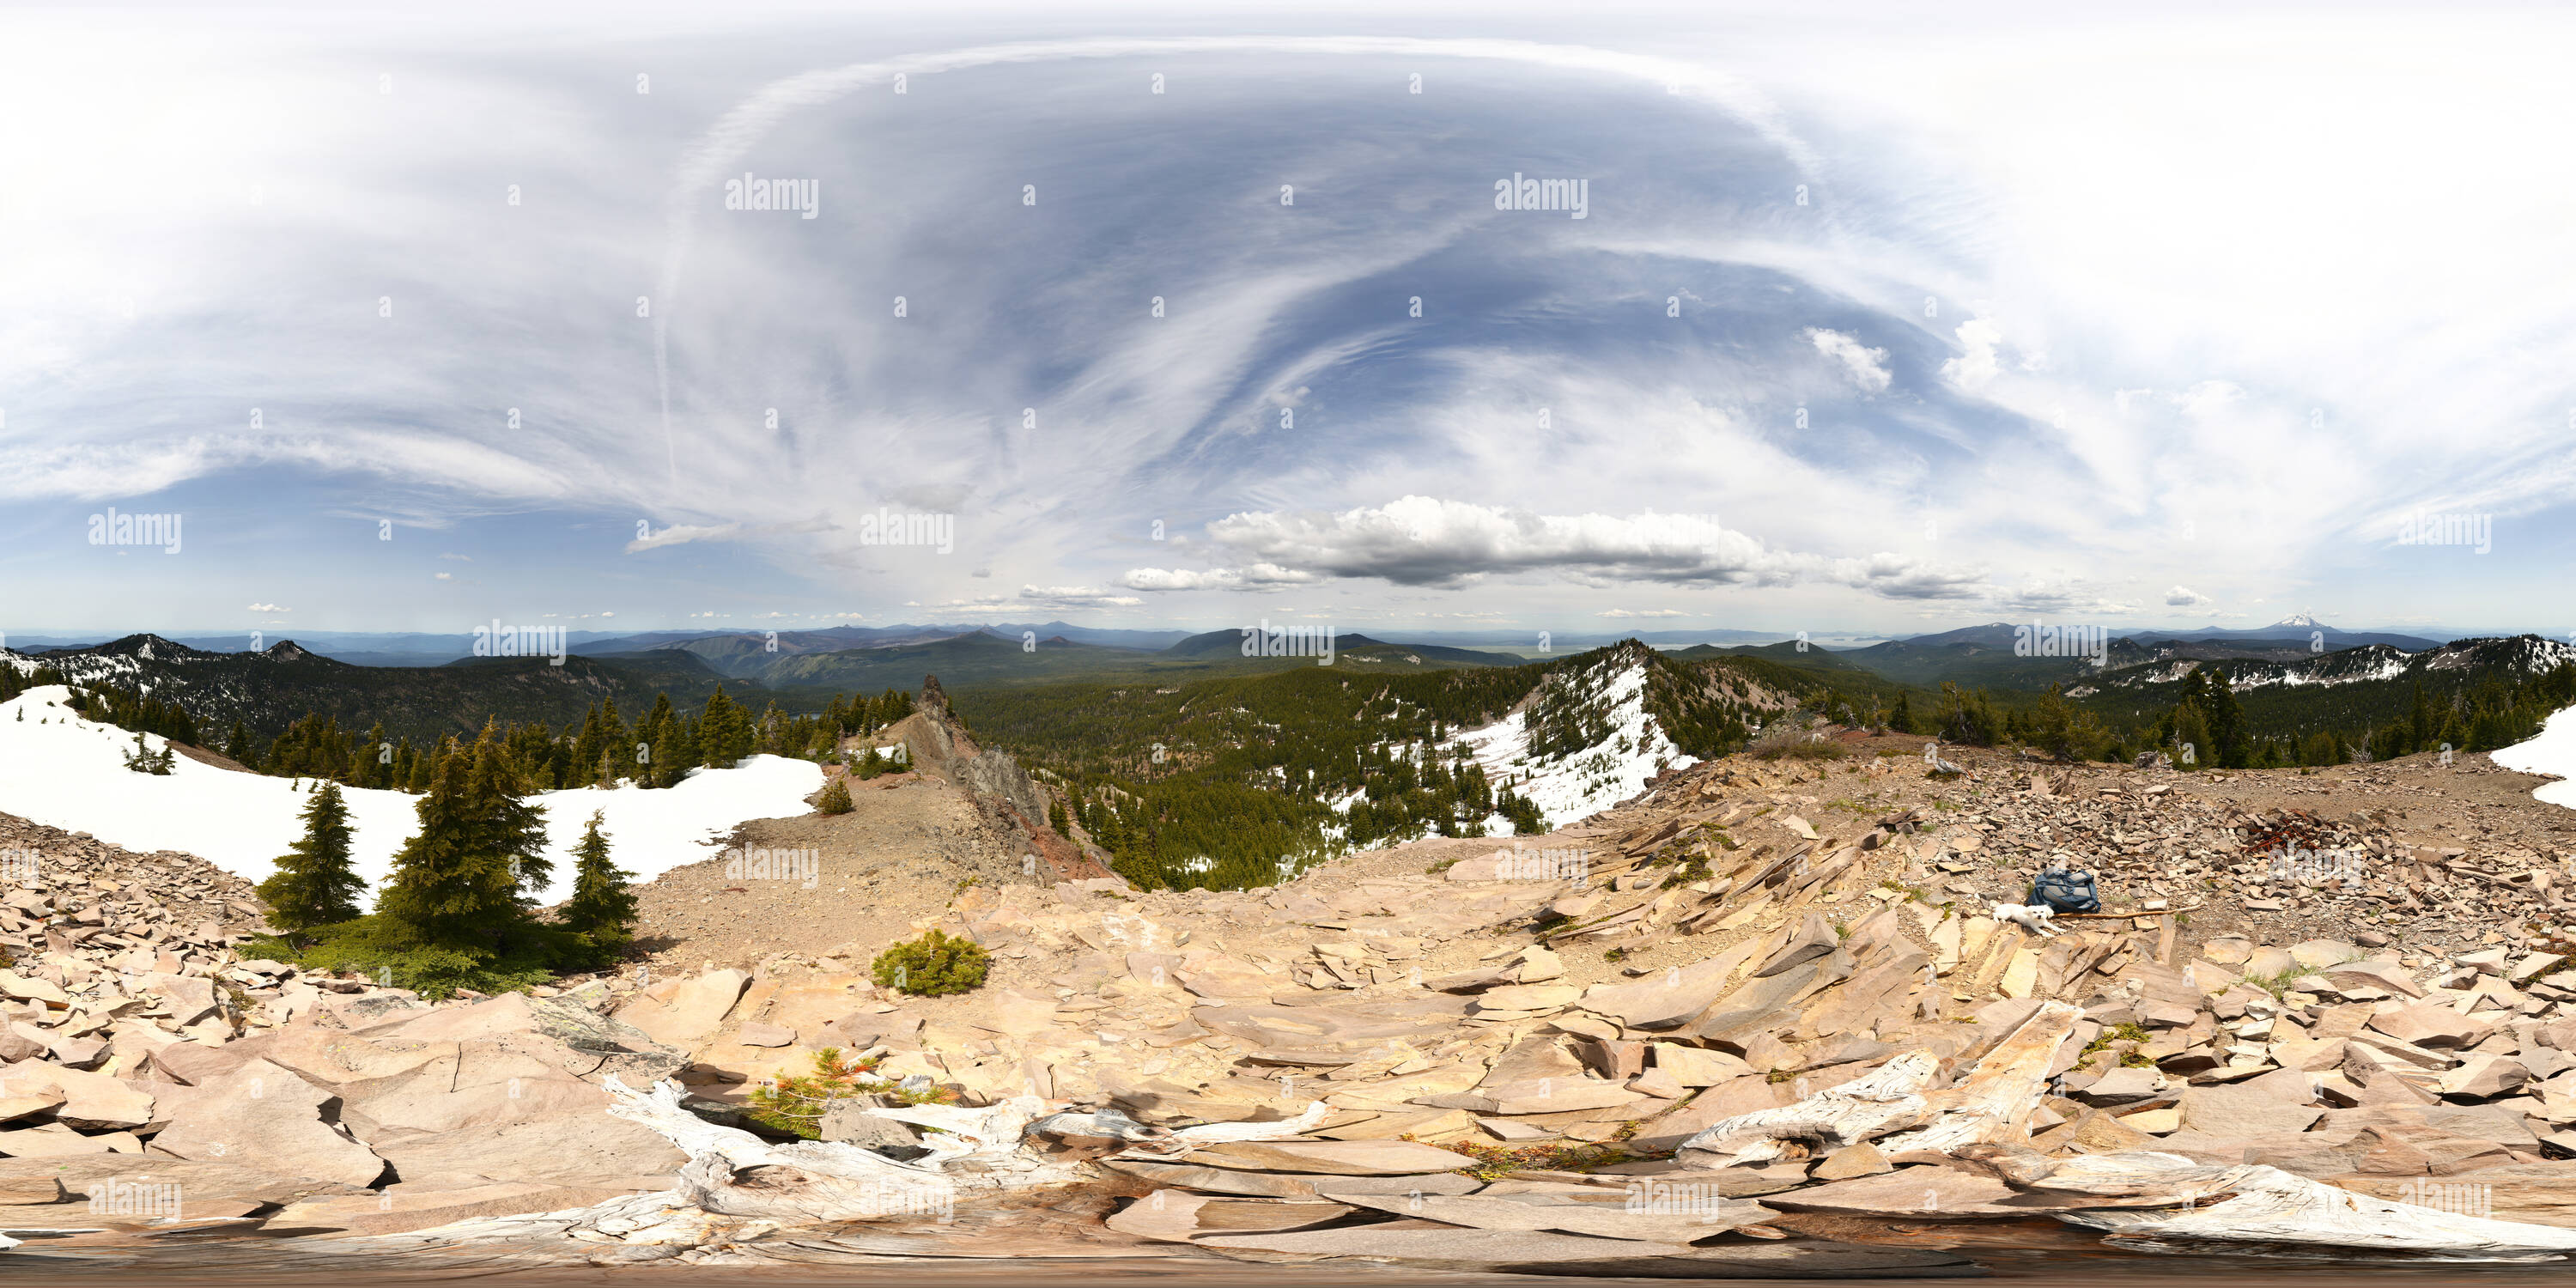 360 Grad Panorama Ansicht von Devils Peak (7582'/2311 m) Gipfel (gigapixel)